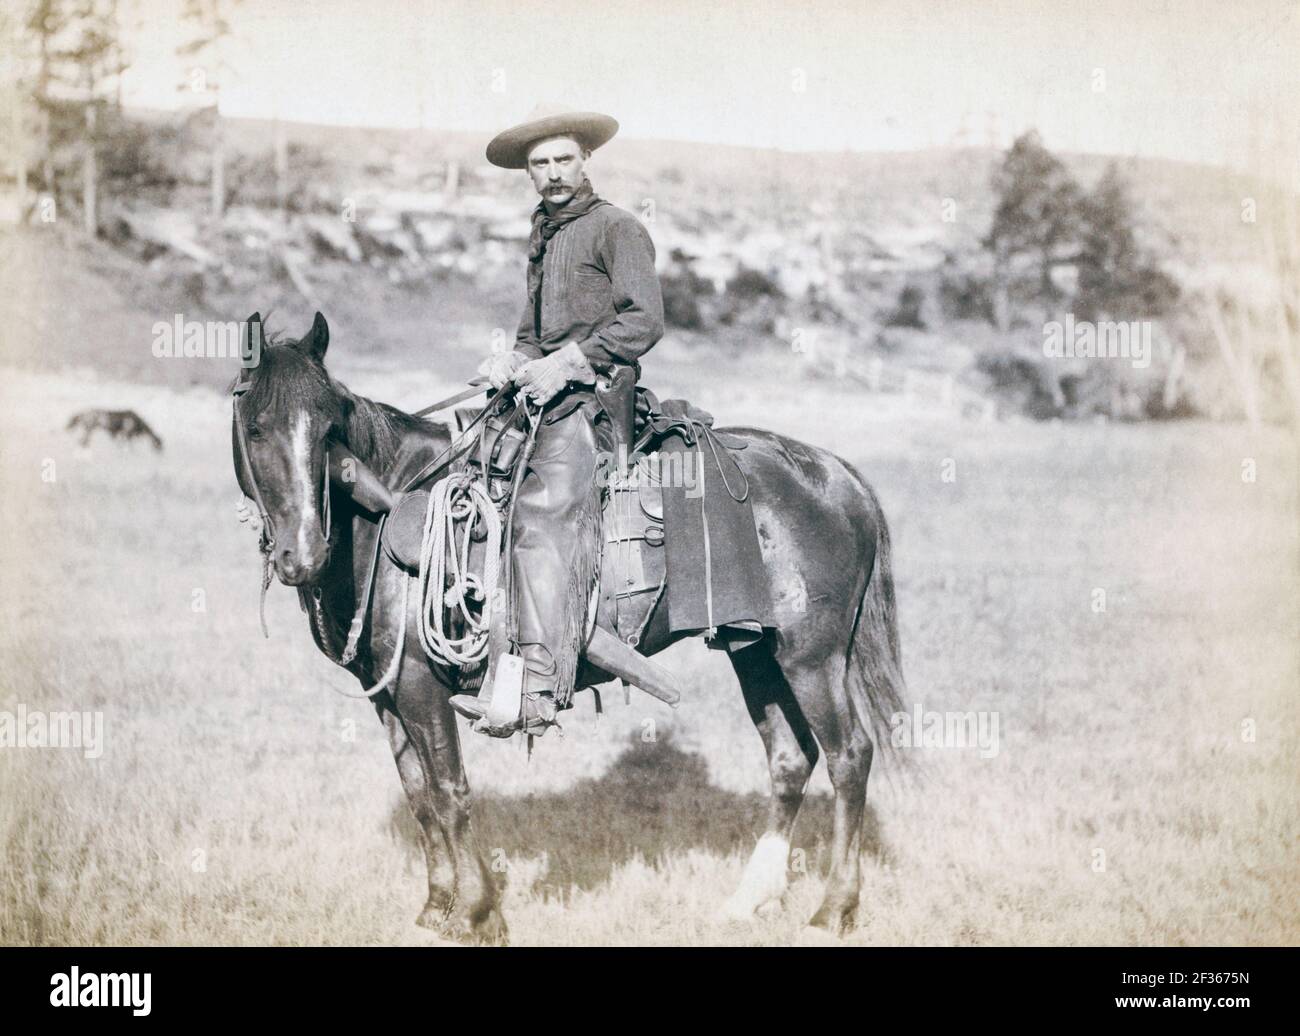 Der Kuhjunge. Ein amerikanischer Cowboy auf dem Pferderücken. Nach einer Arbeit von um 1888 vom Fotografen John C. H. Grabill Stockfoto